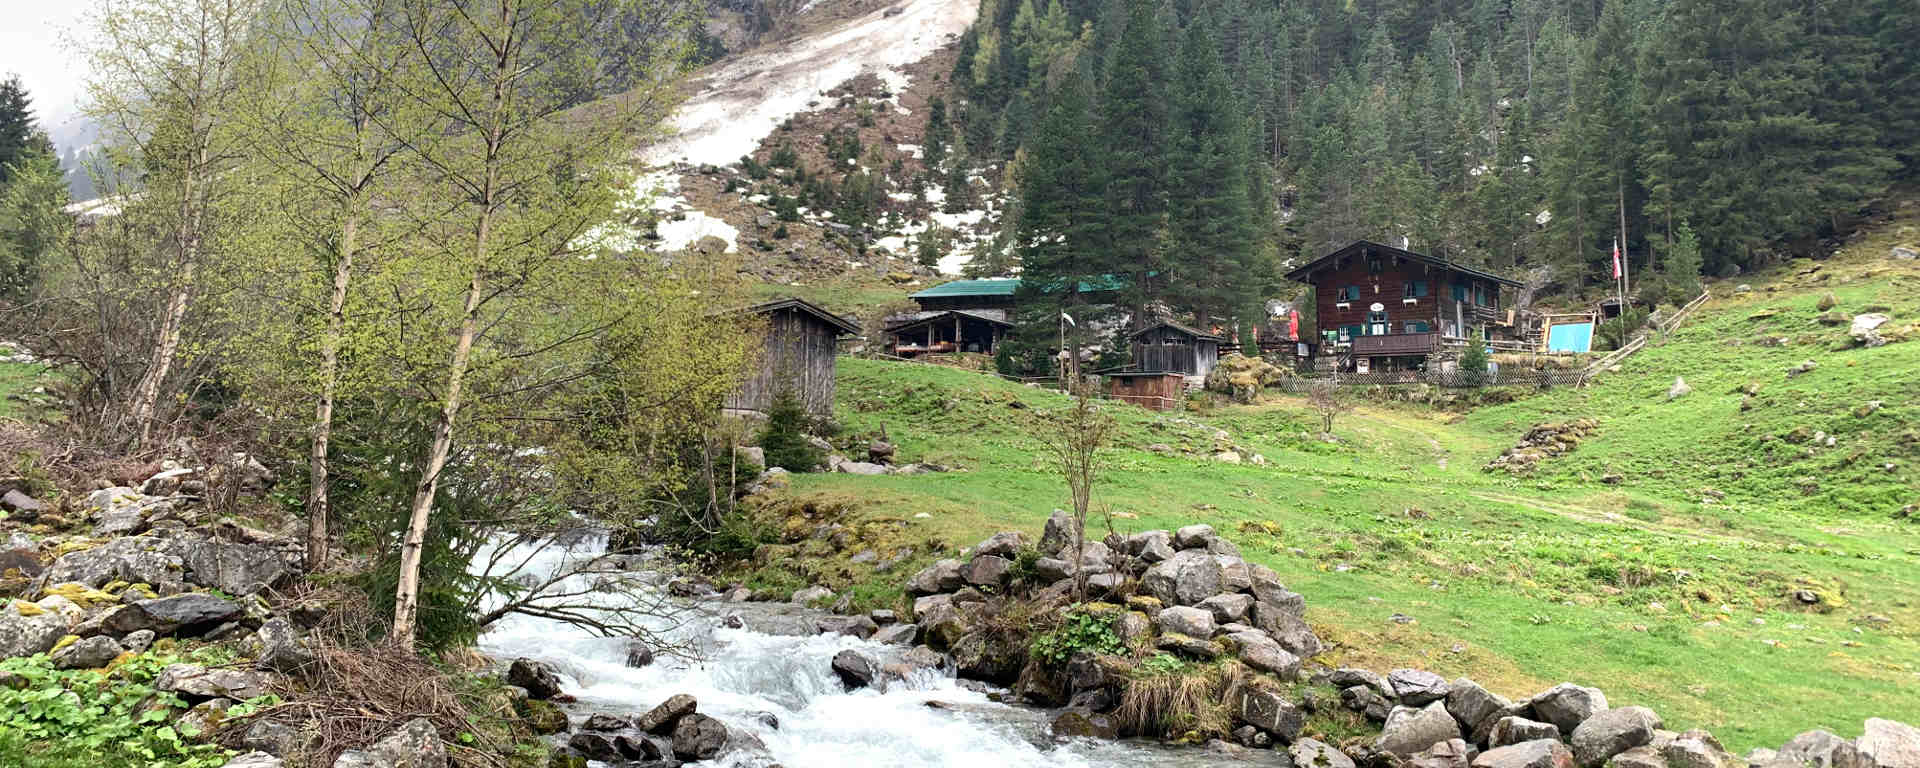 Maxhütte in der Gunggl im Zillertal